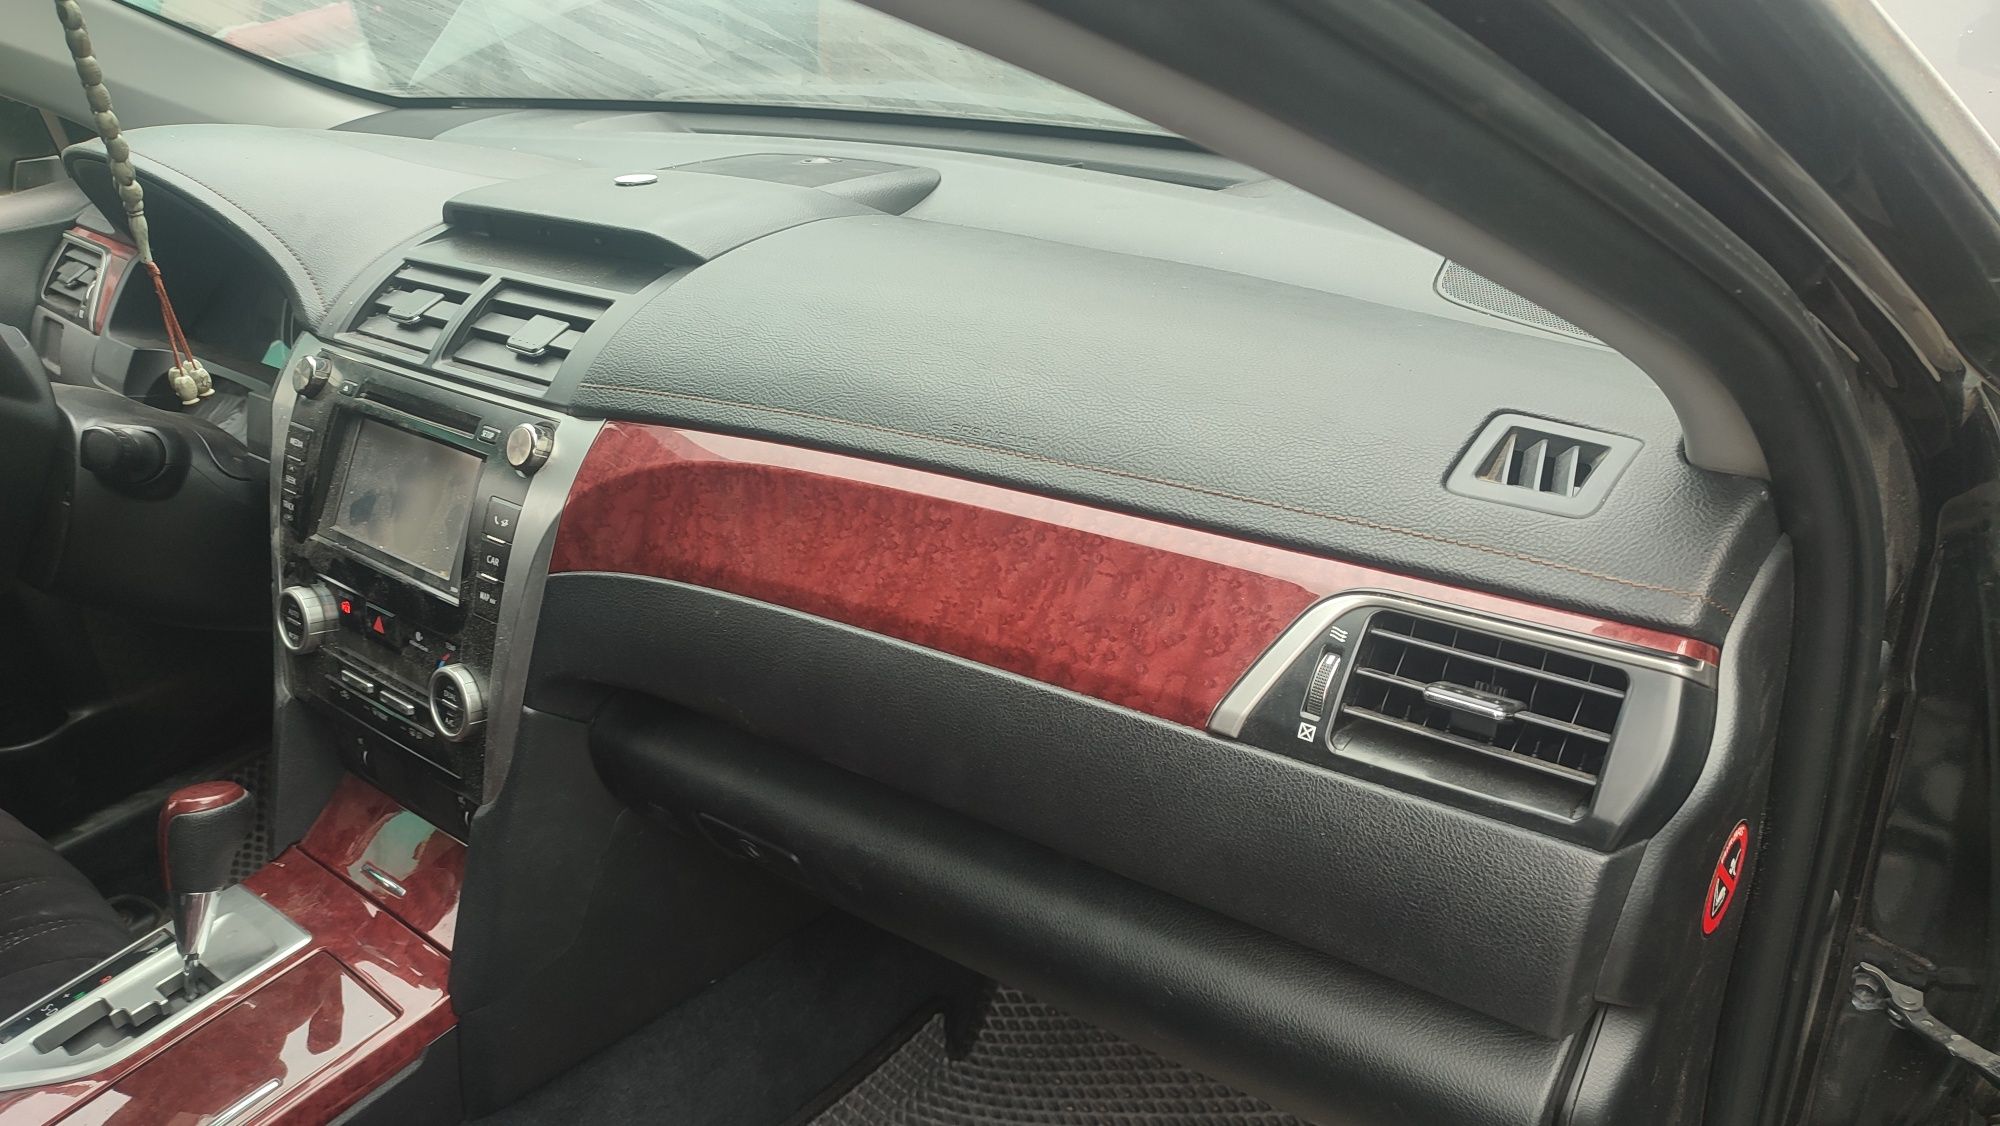 Аирбаг Айрбаг airbag подушка безопасности srs восстановление и реставр